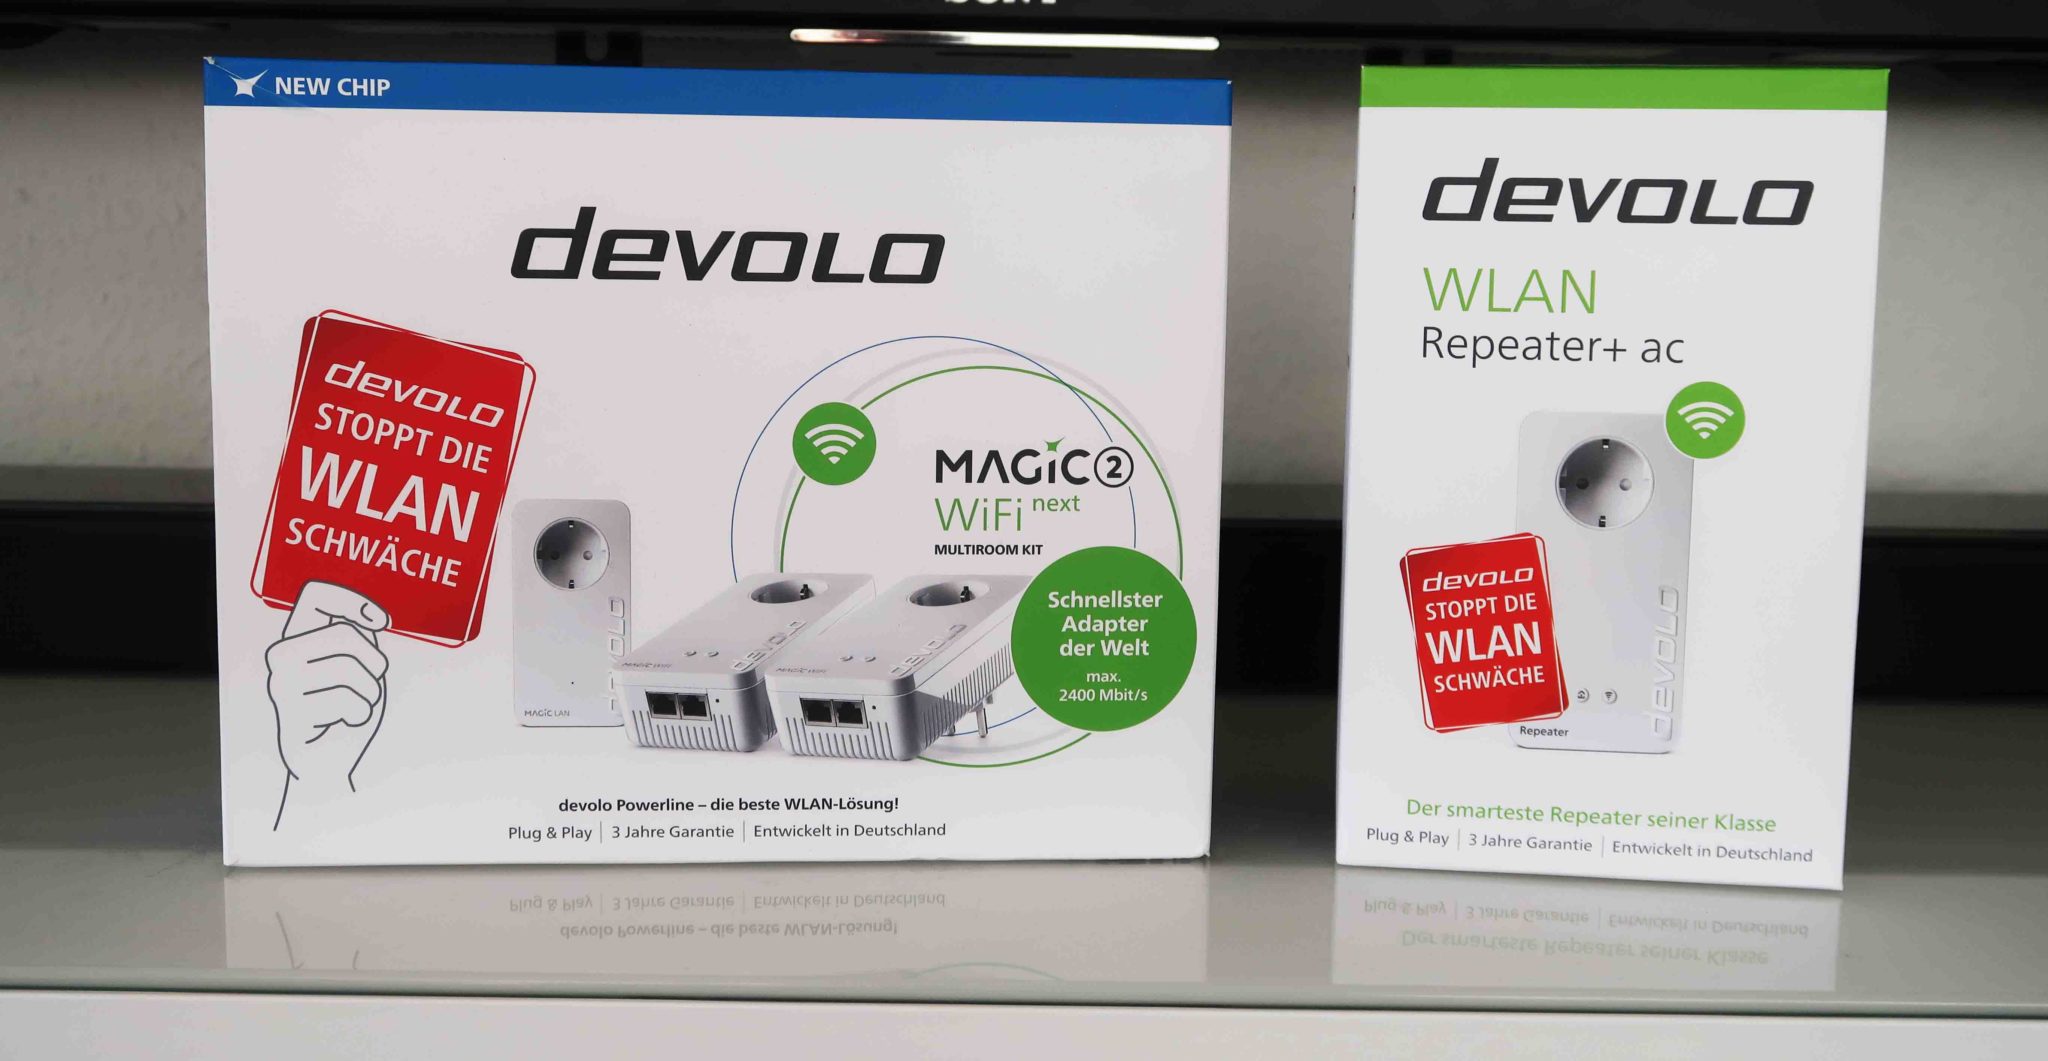 Devolo Magic 2 WiFi im Test: So gut ist der Powerline-Adapter - WELT